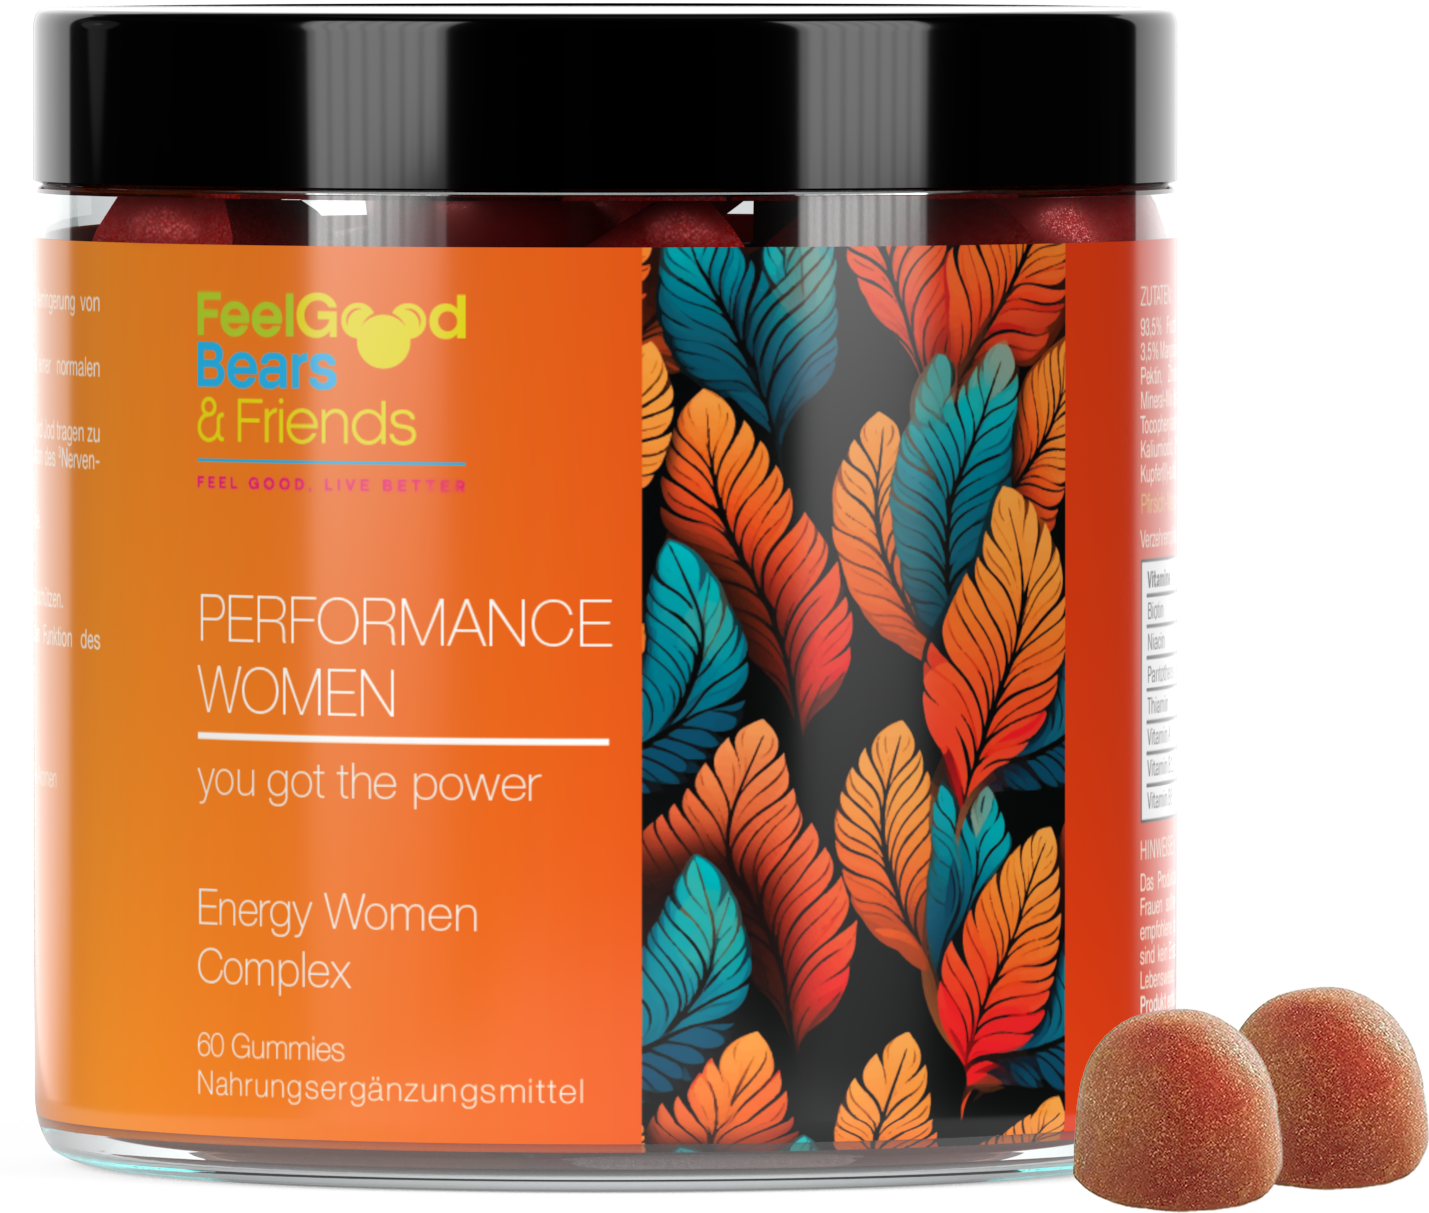 Nahrungsergänzungsmittel als Vitamin-Gummie für Energie, Kraft, geistige Leistungsfähigkeit und Immunsystem entwickelt für Frauen.